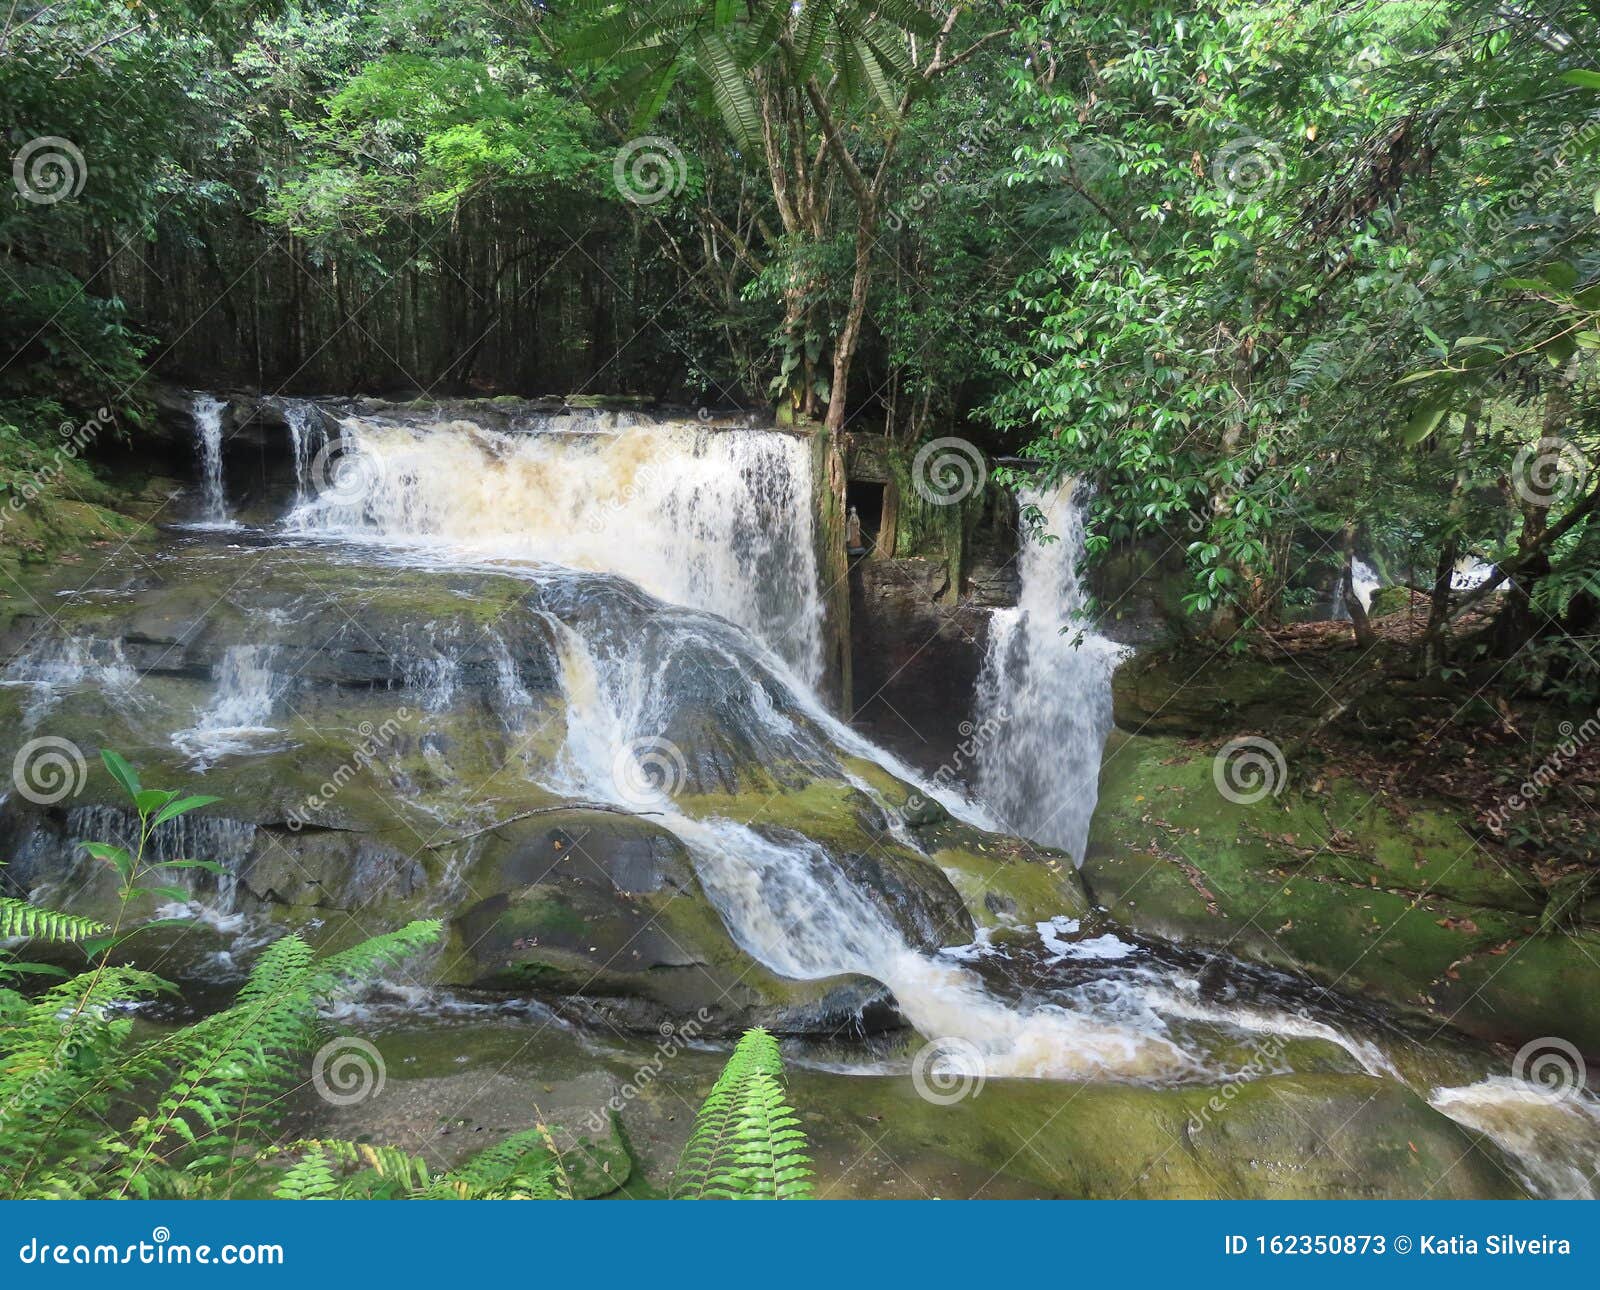 beautiful waterfall in presidente figueiredo, amazon region